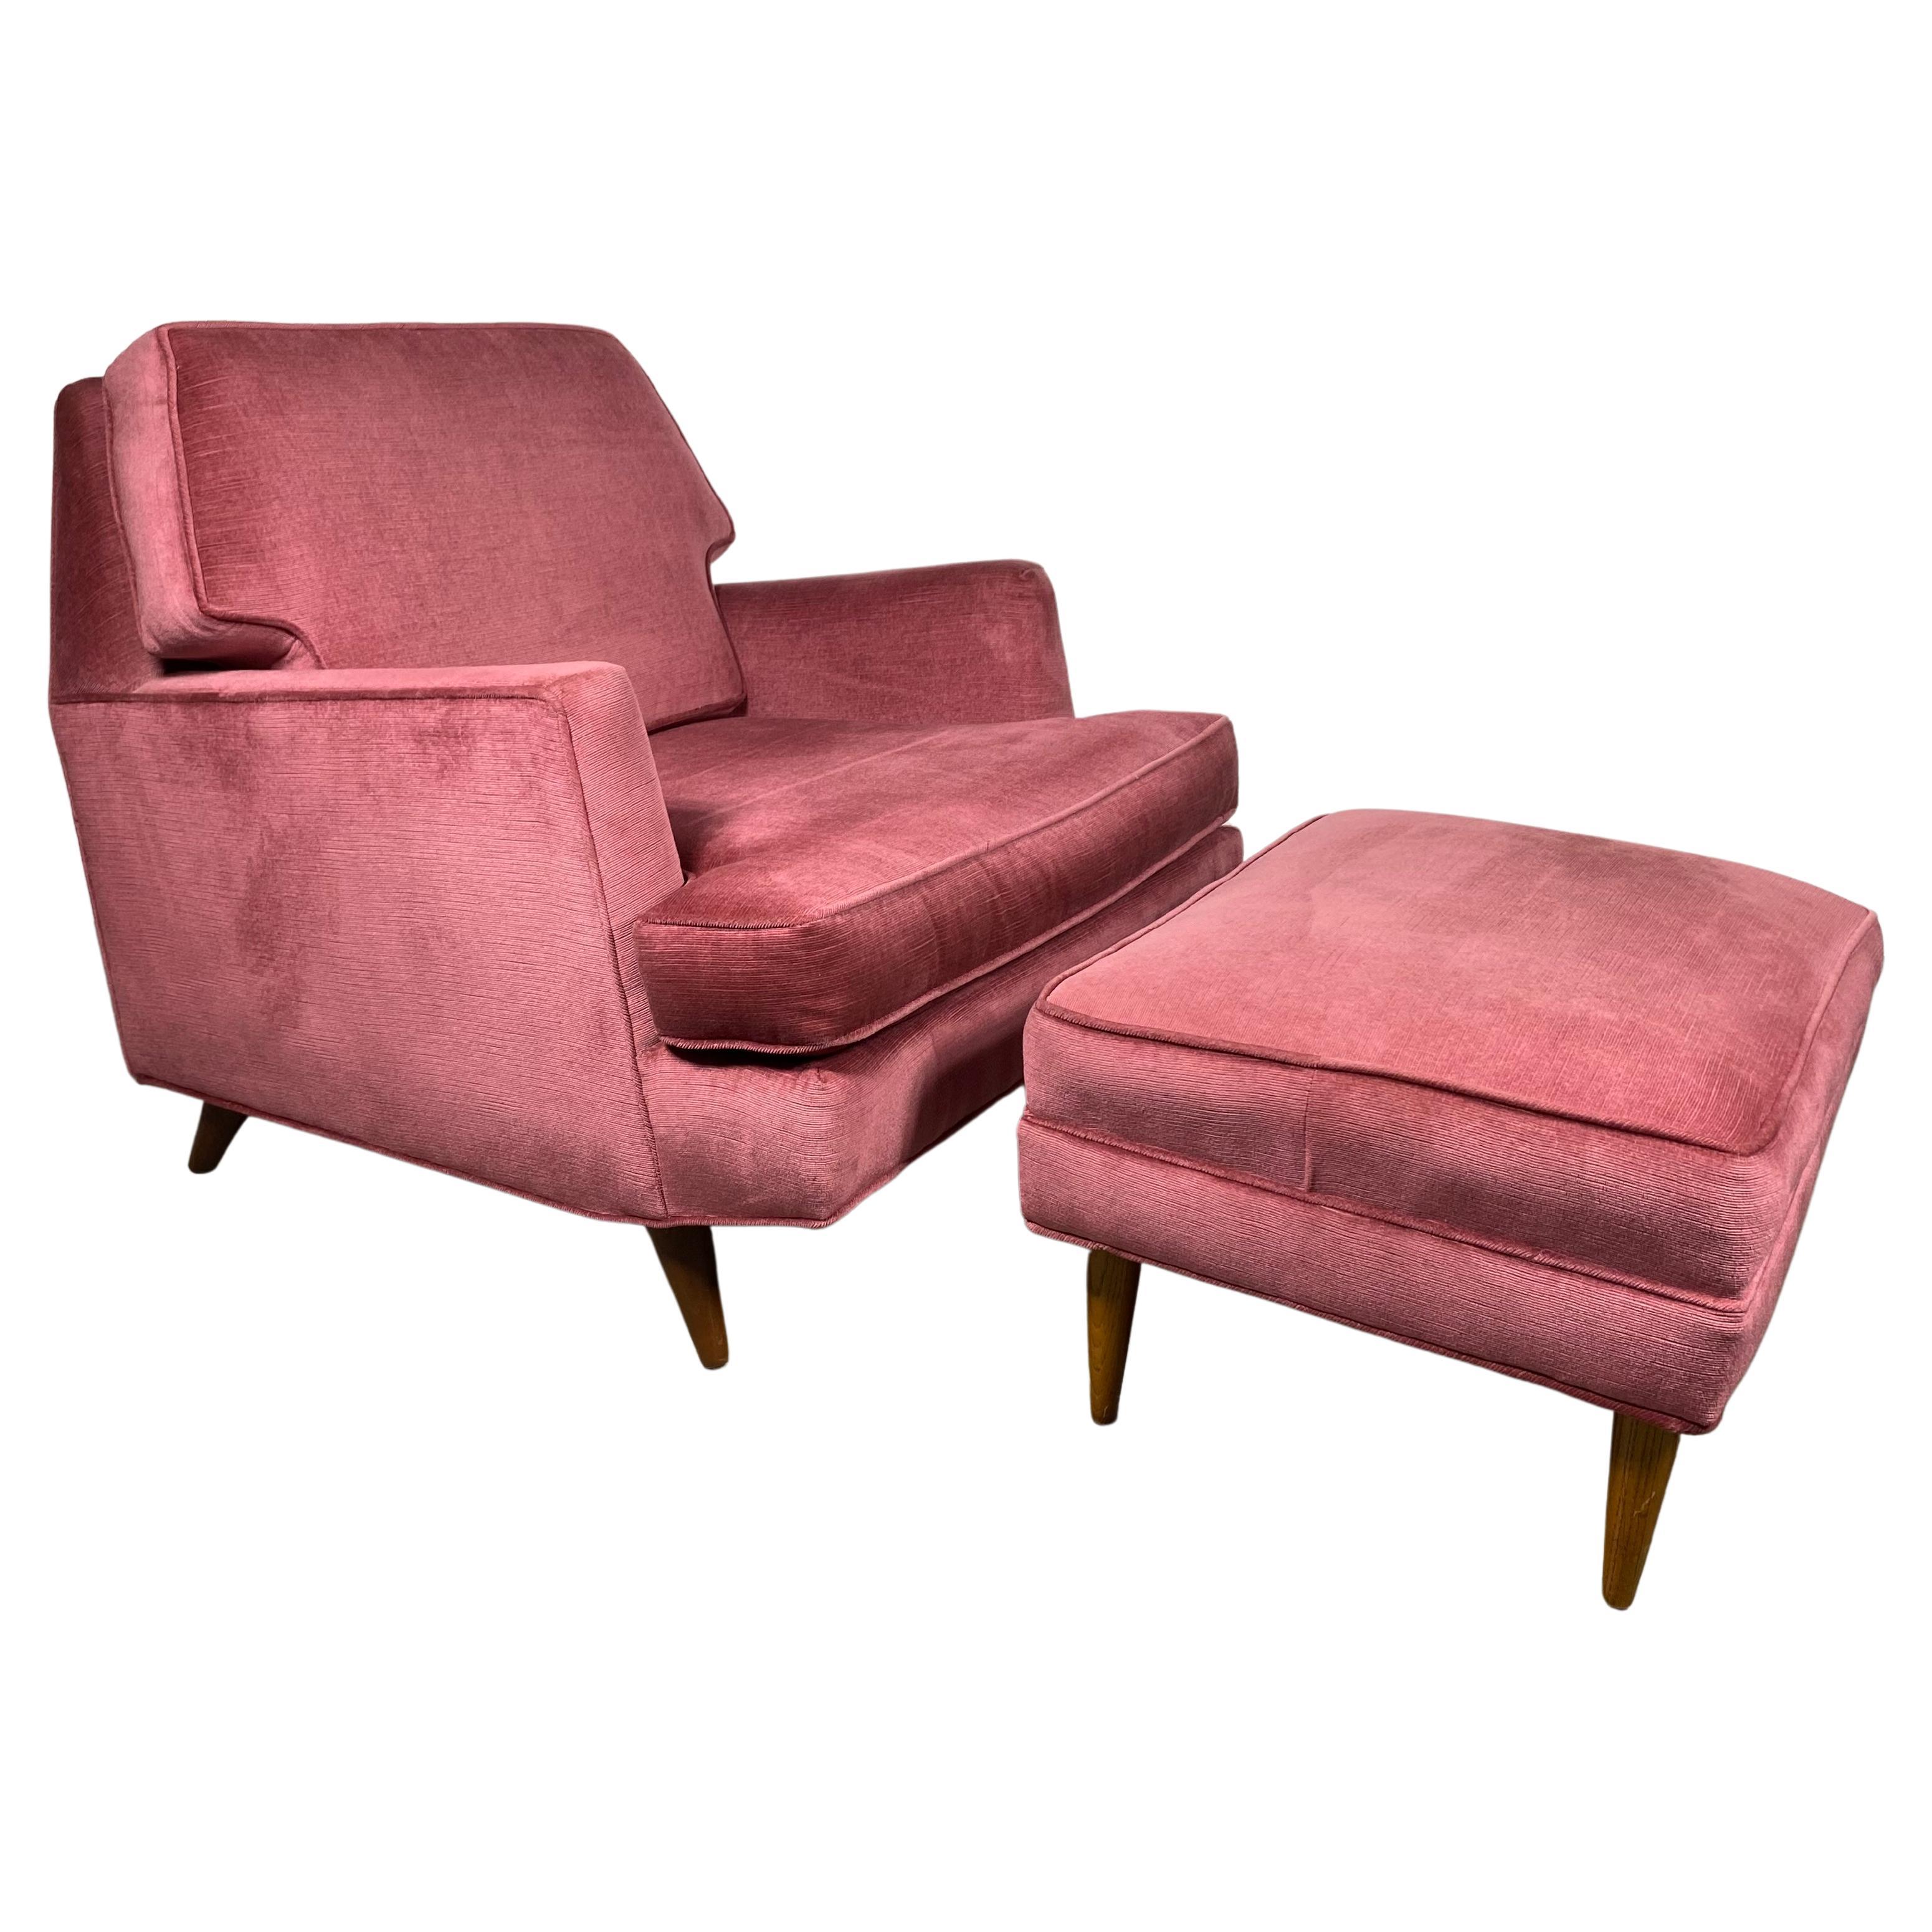 Stunning Modernist Lounge Chair & Ott Oman by Roger Springer for Dunbar